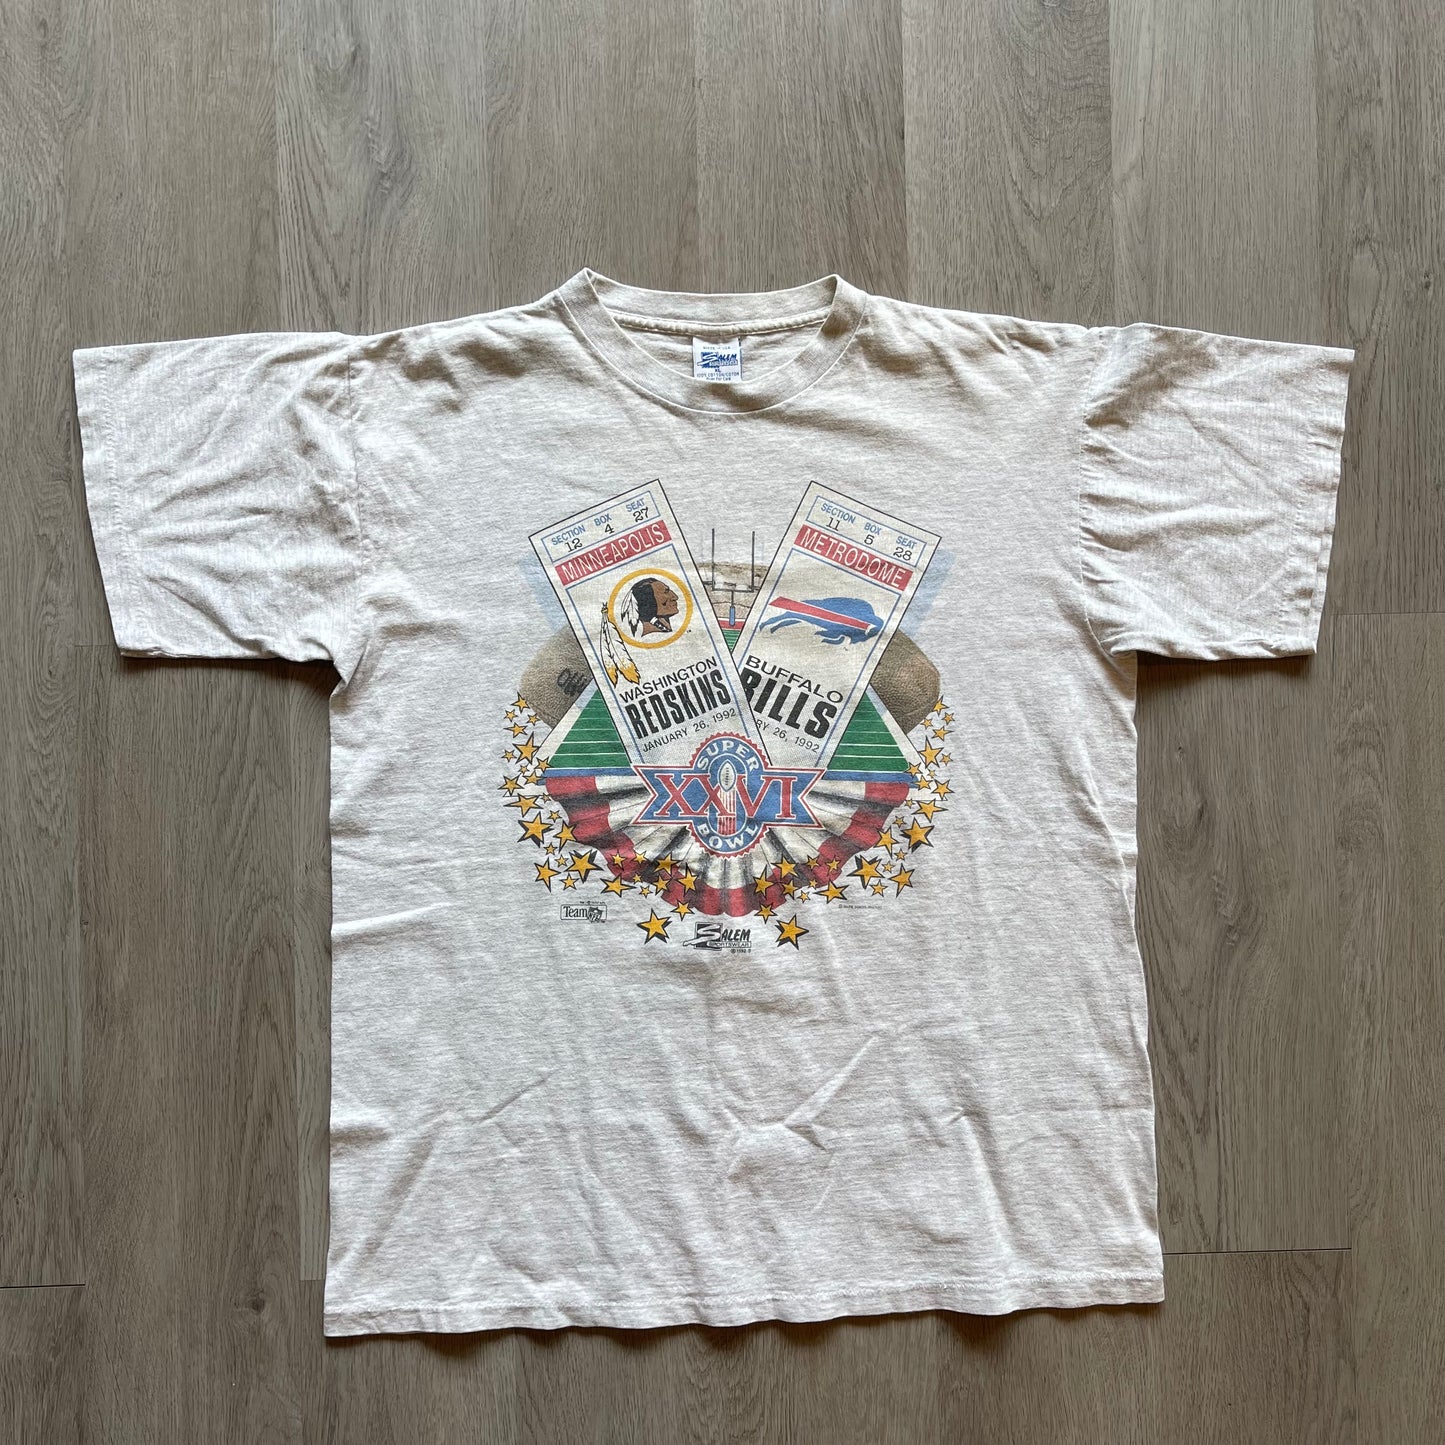 Redskin Ticket Super Bowl XXVI Vintage T-shirt